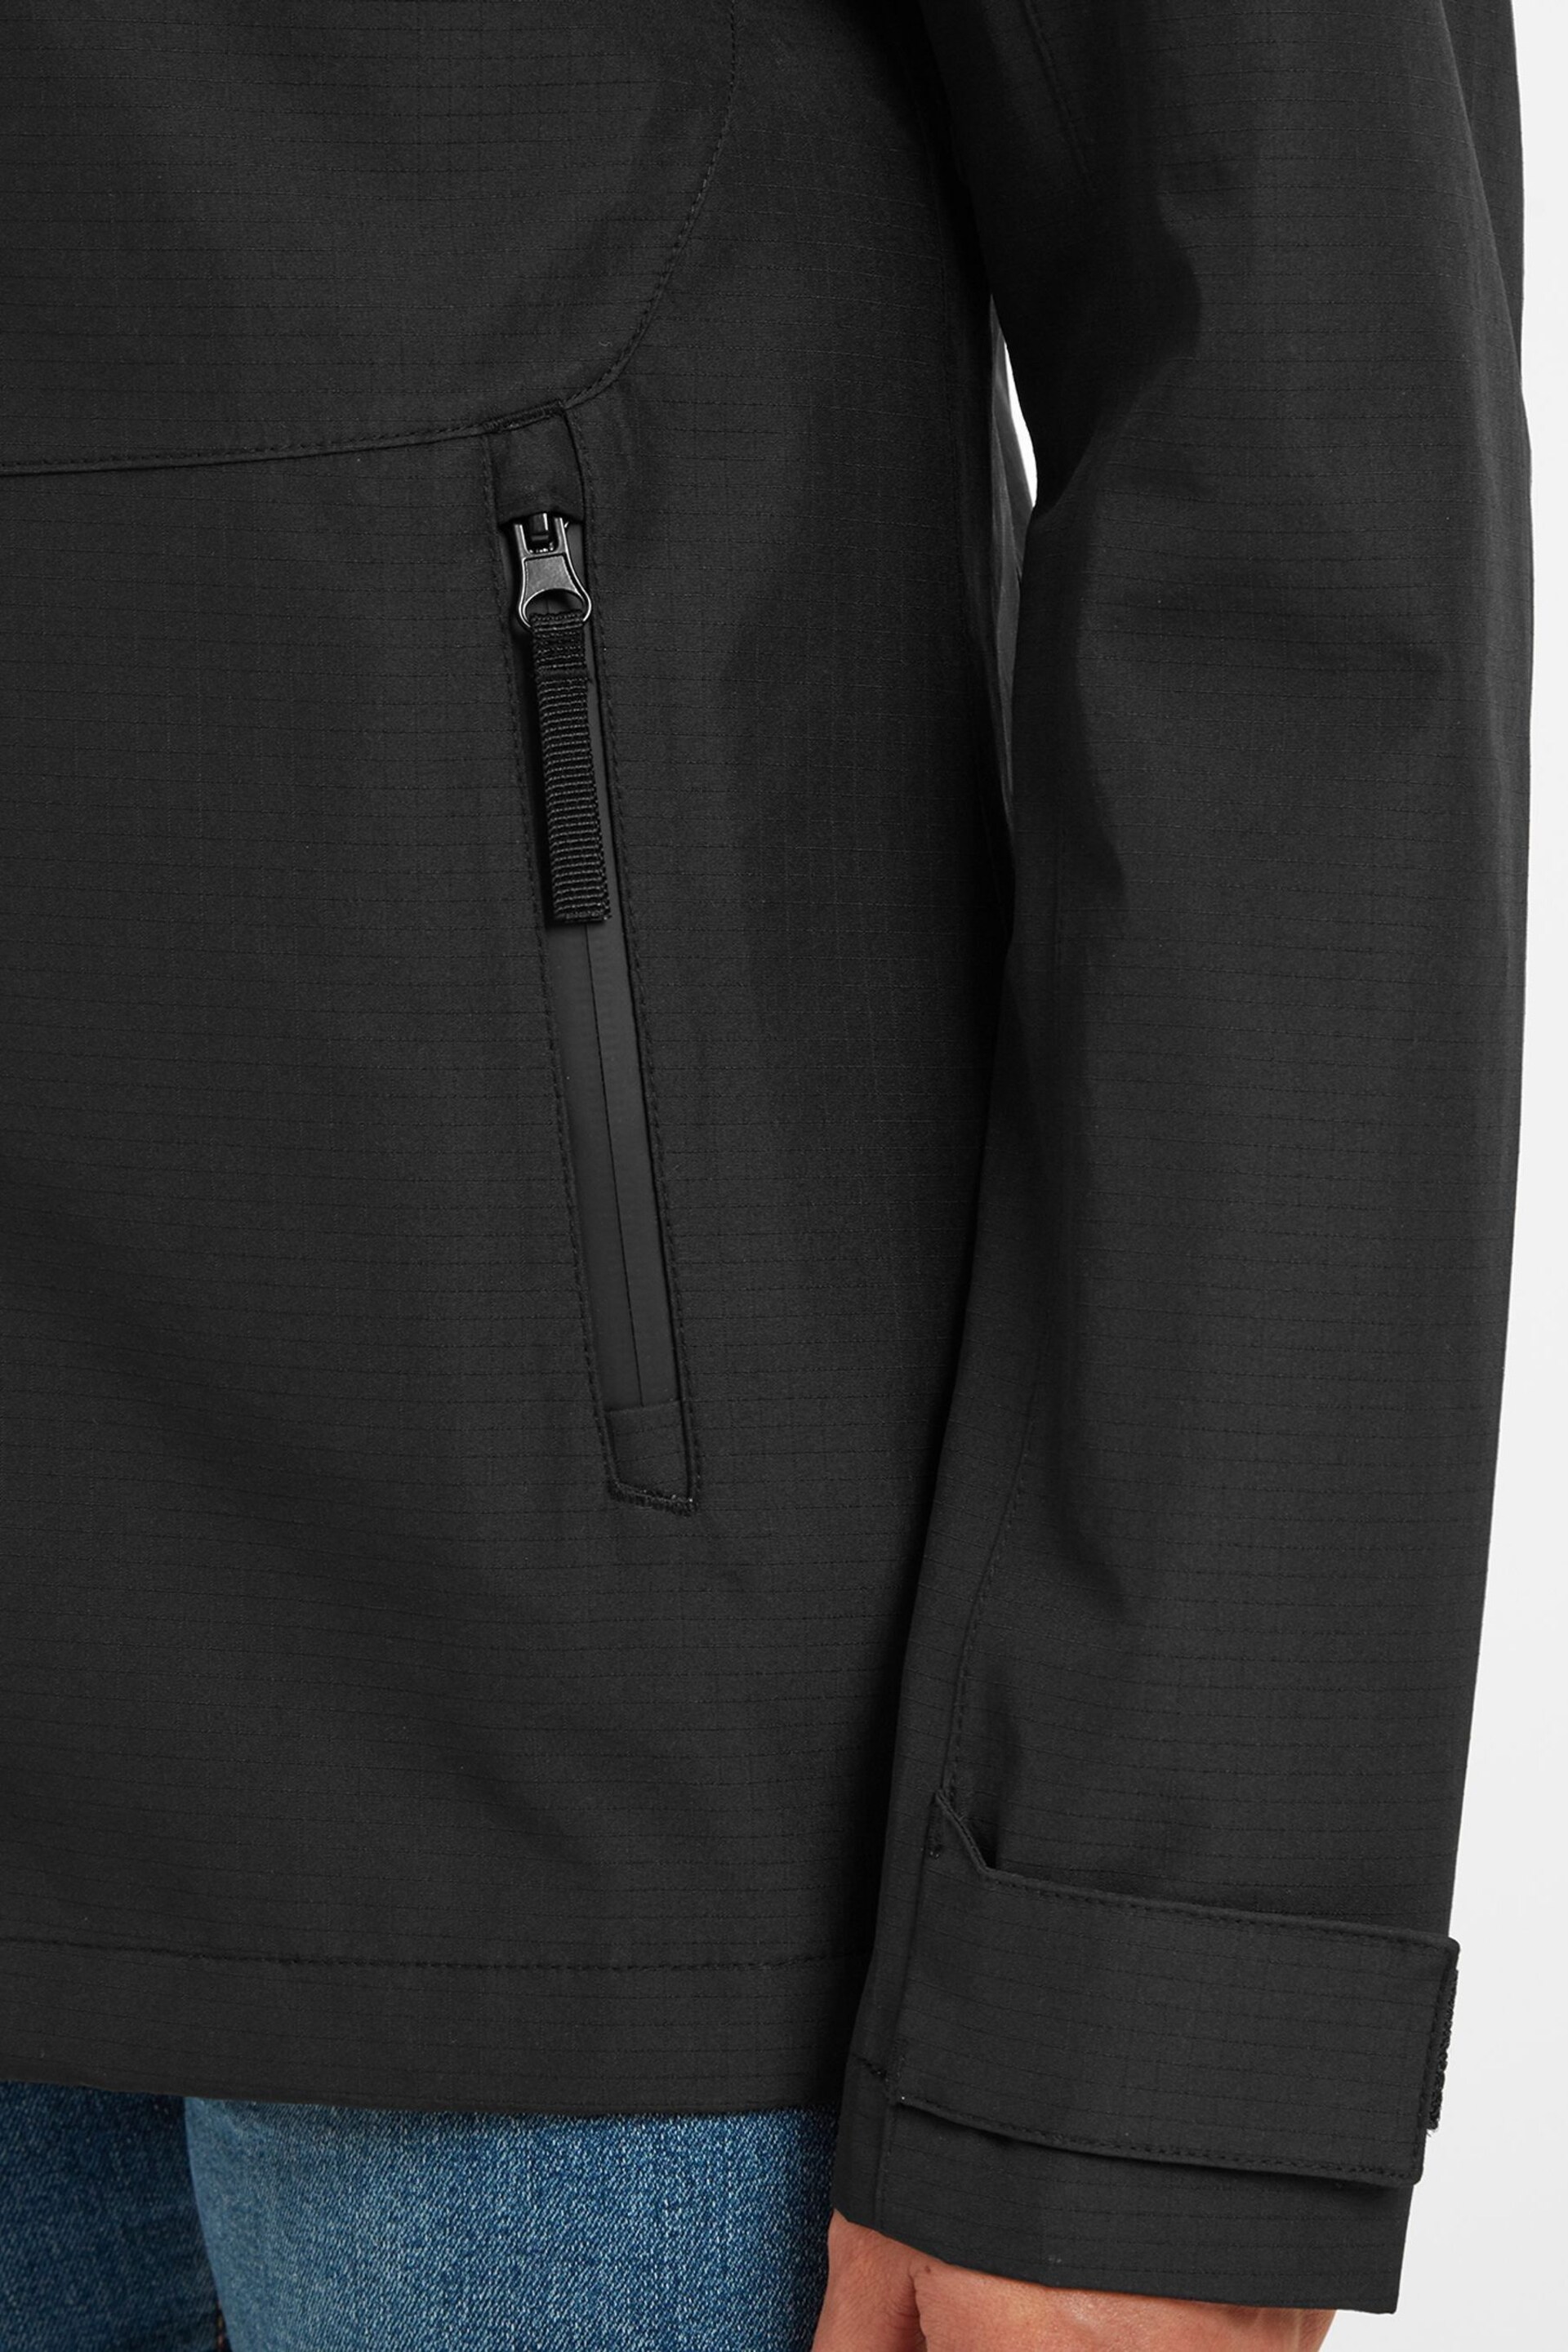 Tog 24 Black Austwick Waterproof Jacket - Image 5 of 6